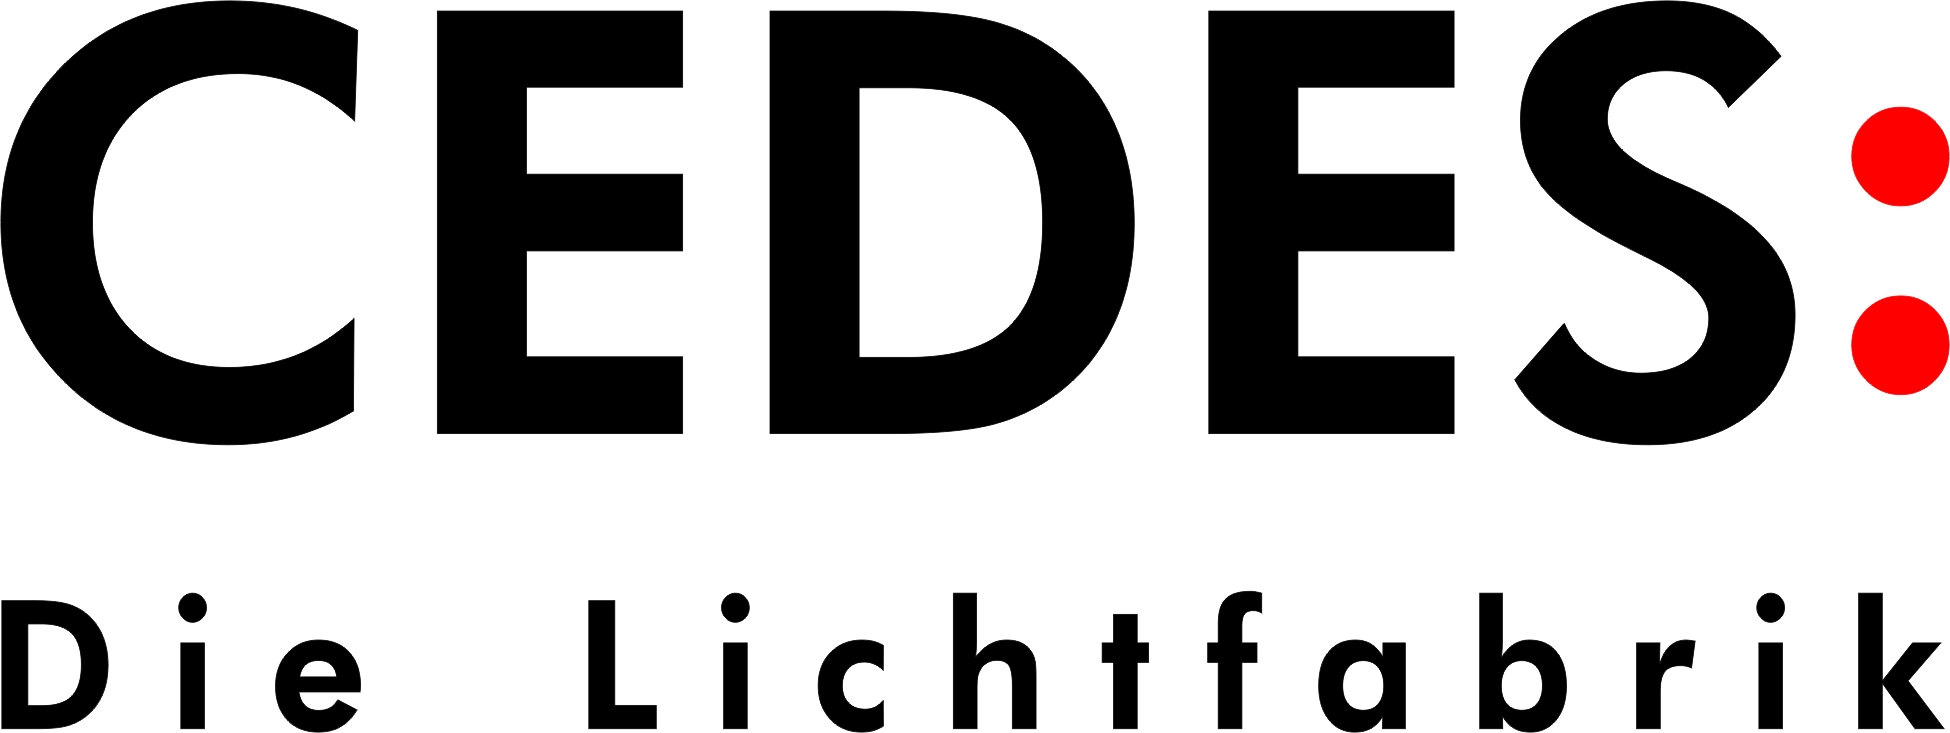 CEDES: GmbH Die Lichtfabrik Logo